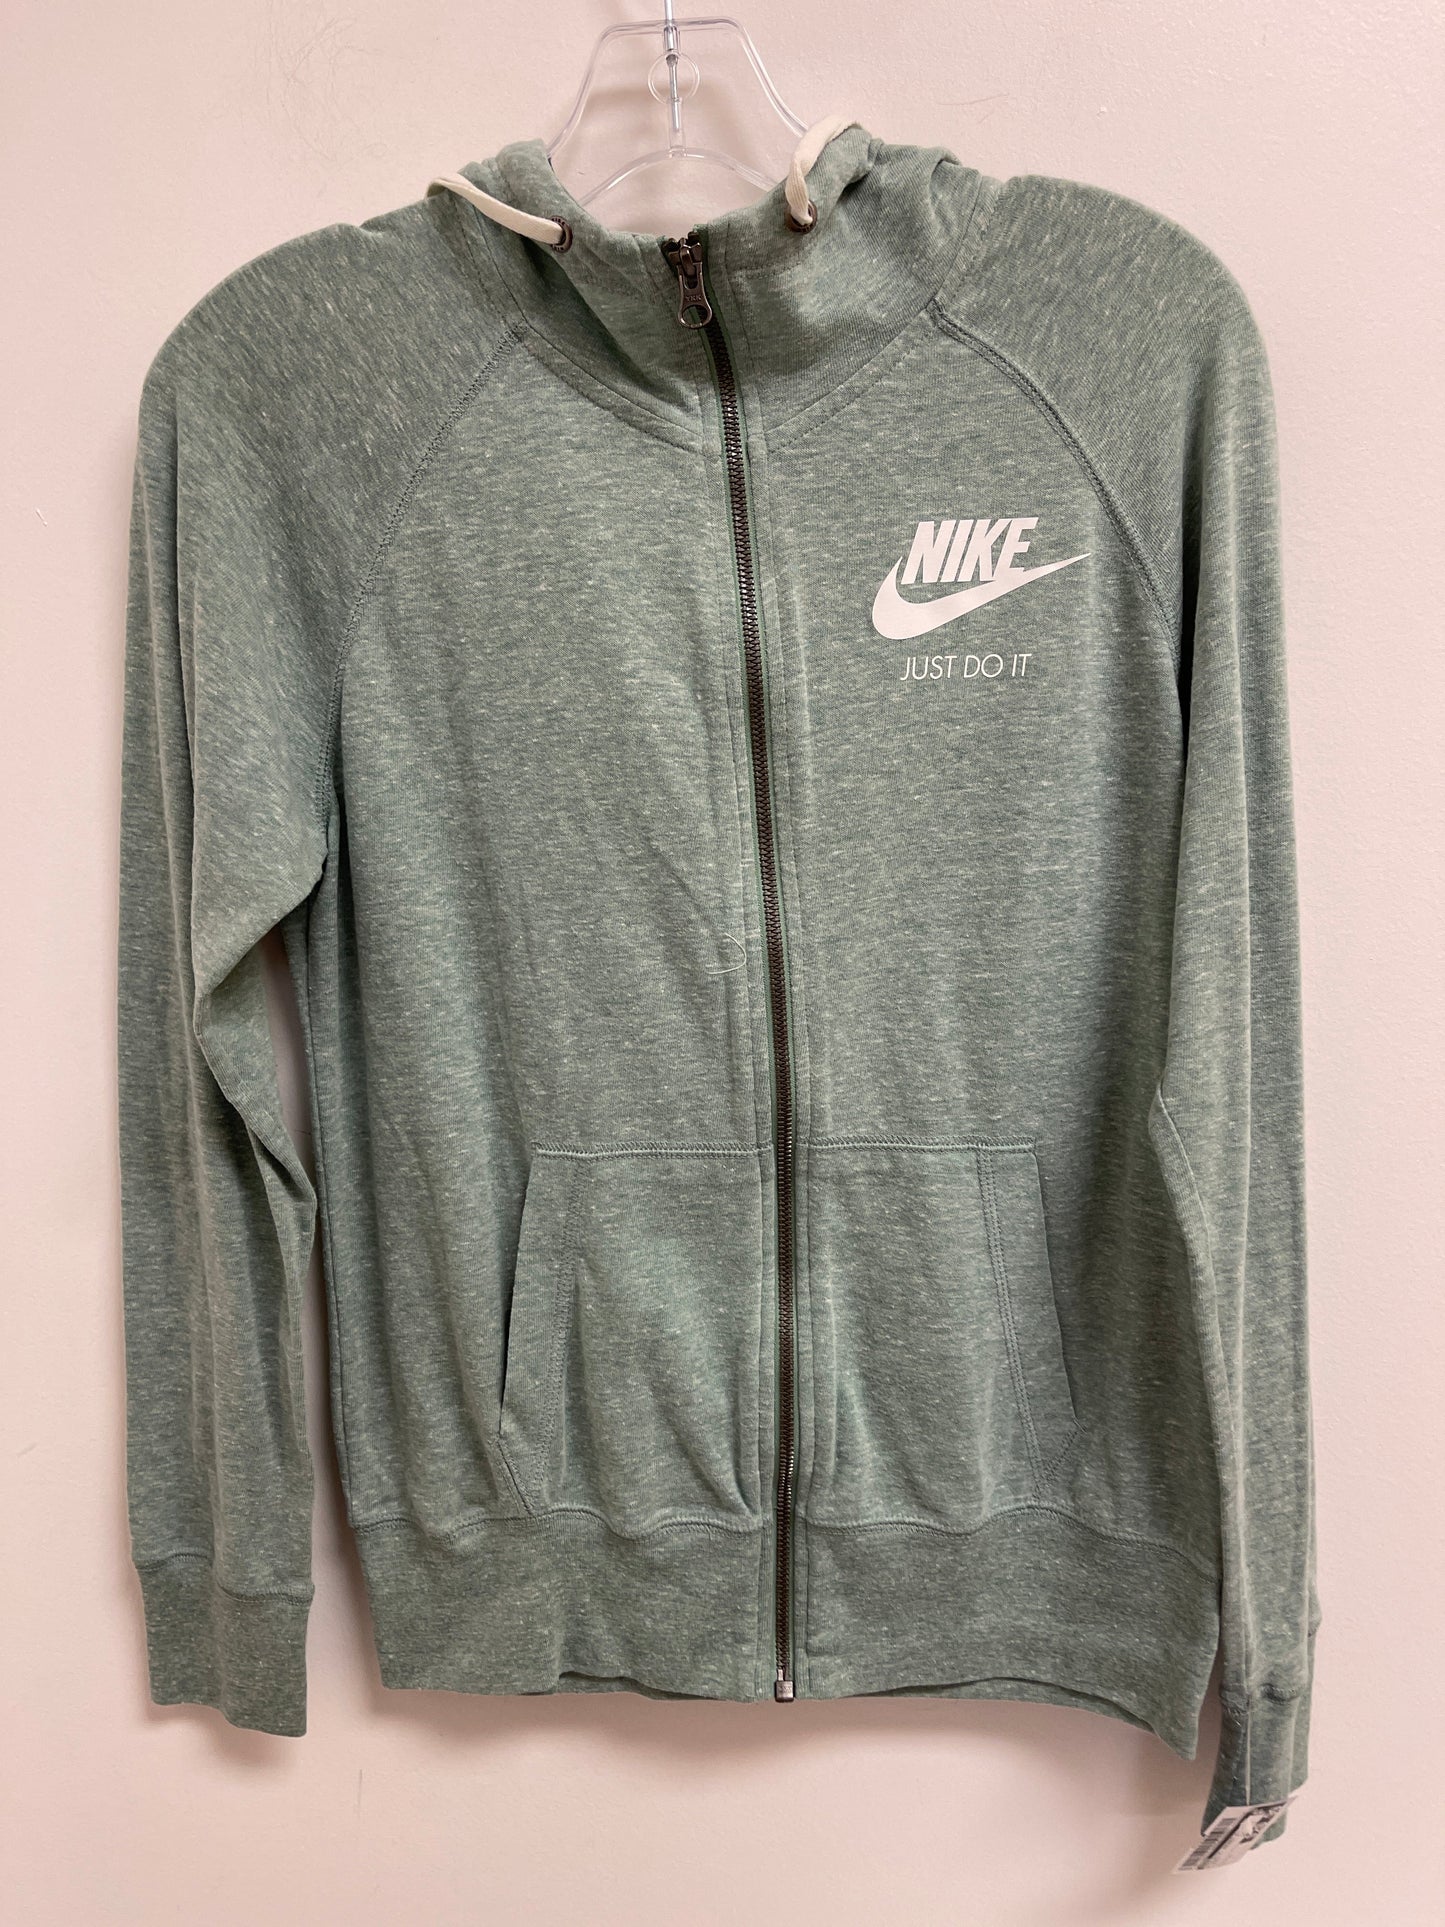 Green Athletic Jacket Nike, Size S